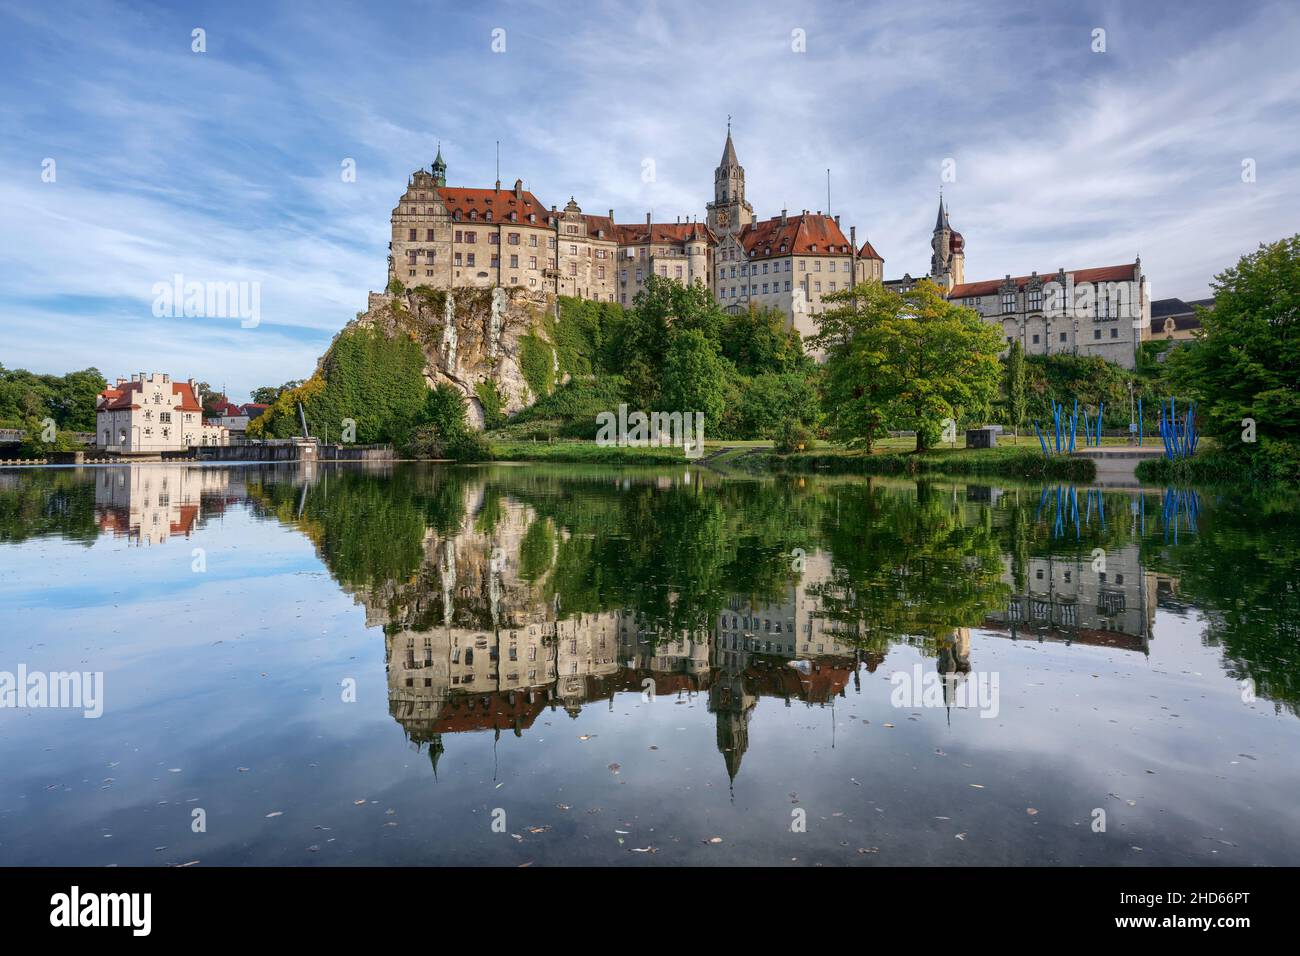 Le château de Hohenzollern à Sigmaringen, en Allemagne, se reflète dans l'eau du Danube pendant la journée Banque D'Images